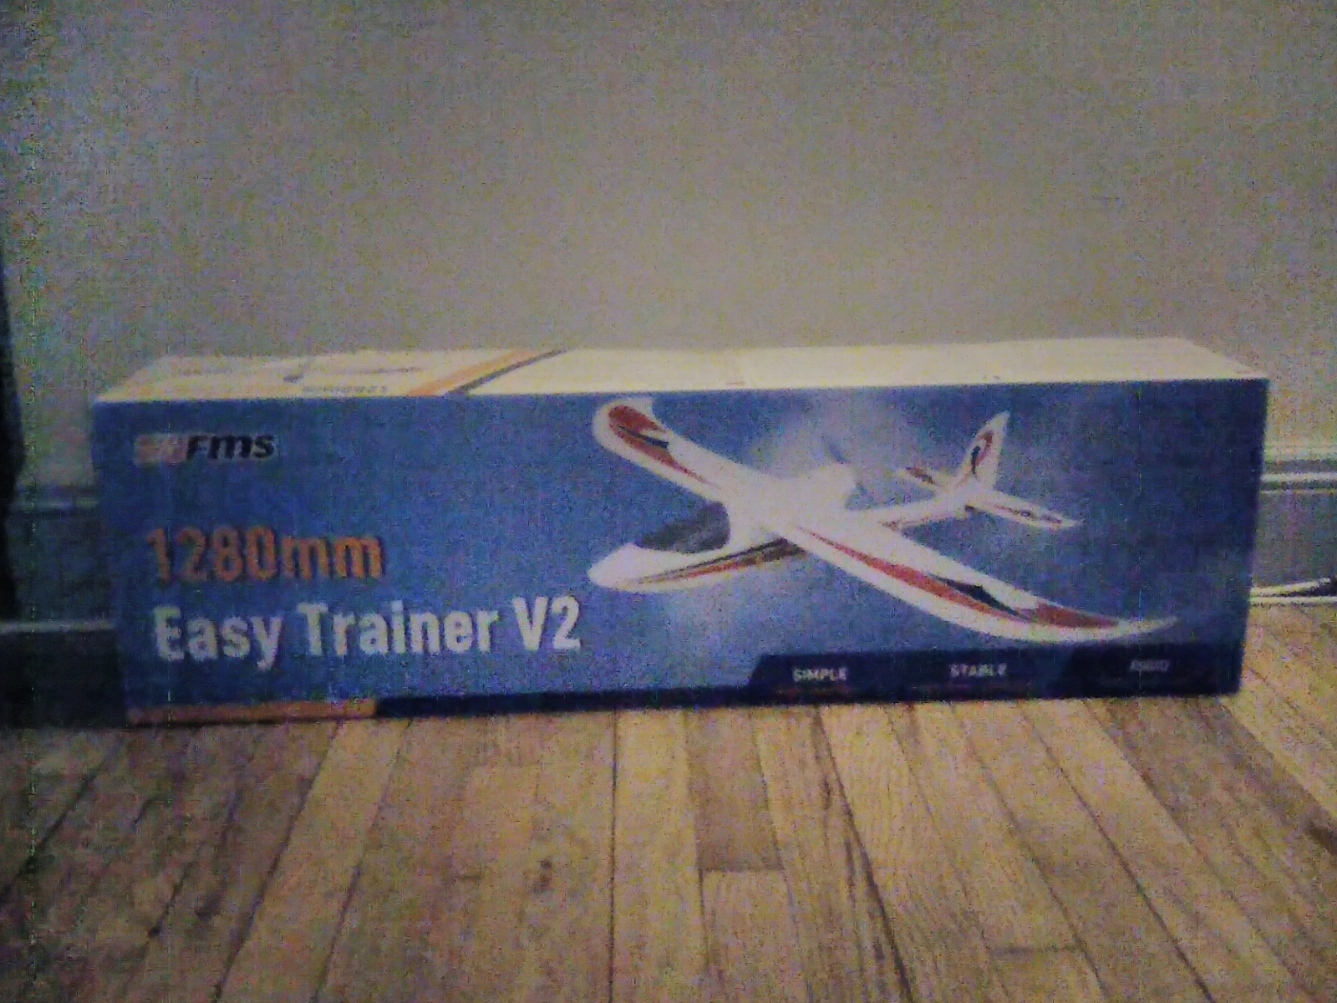 FMS 1280mm Easy Trainer V2!